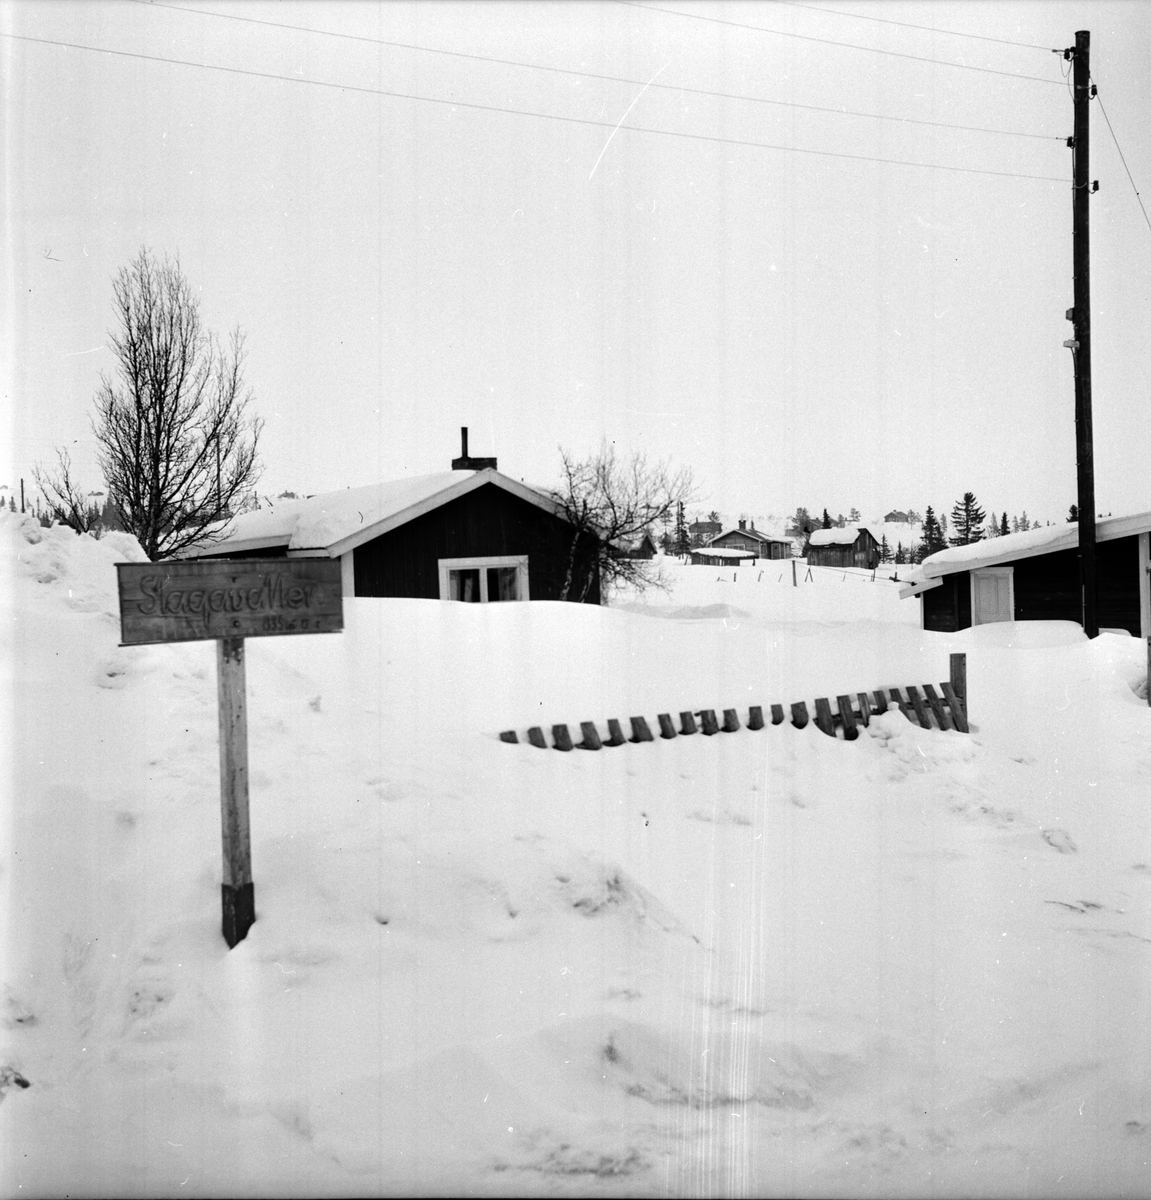 Lofsdalen. Bilder från Strådalen, Slagavallen,
9 April 1967.